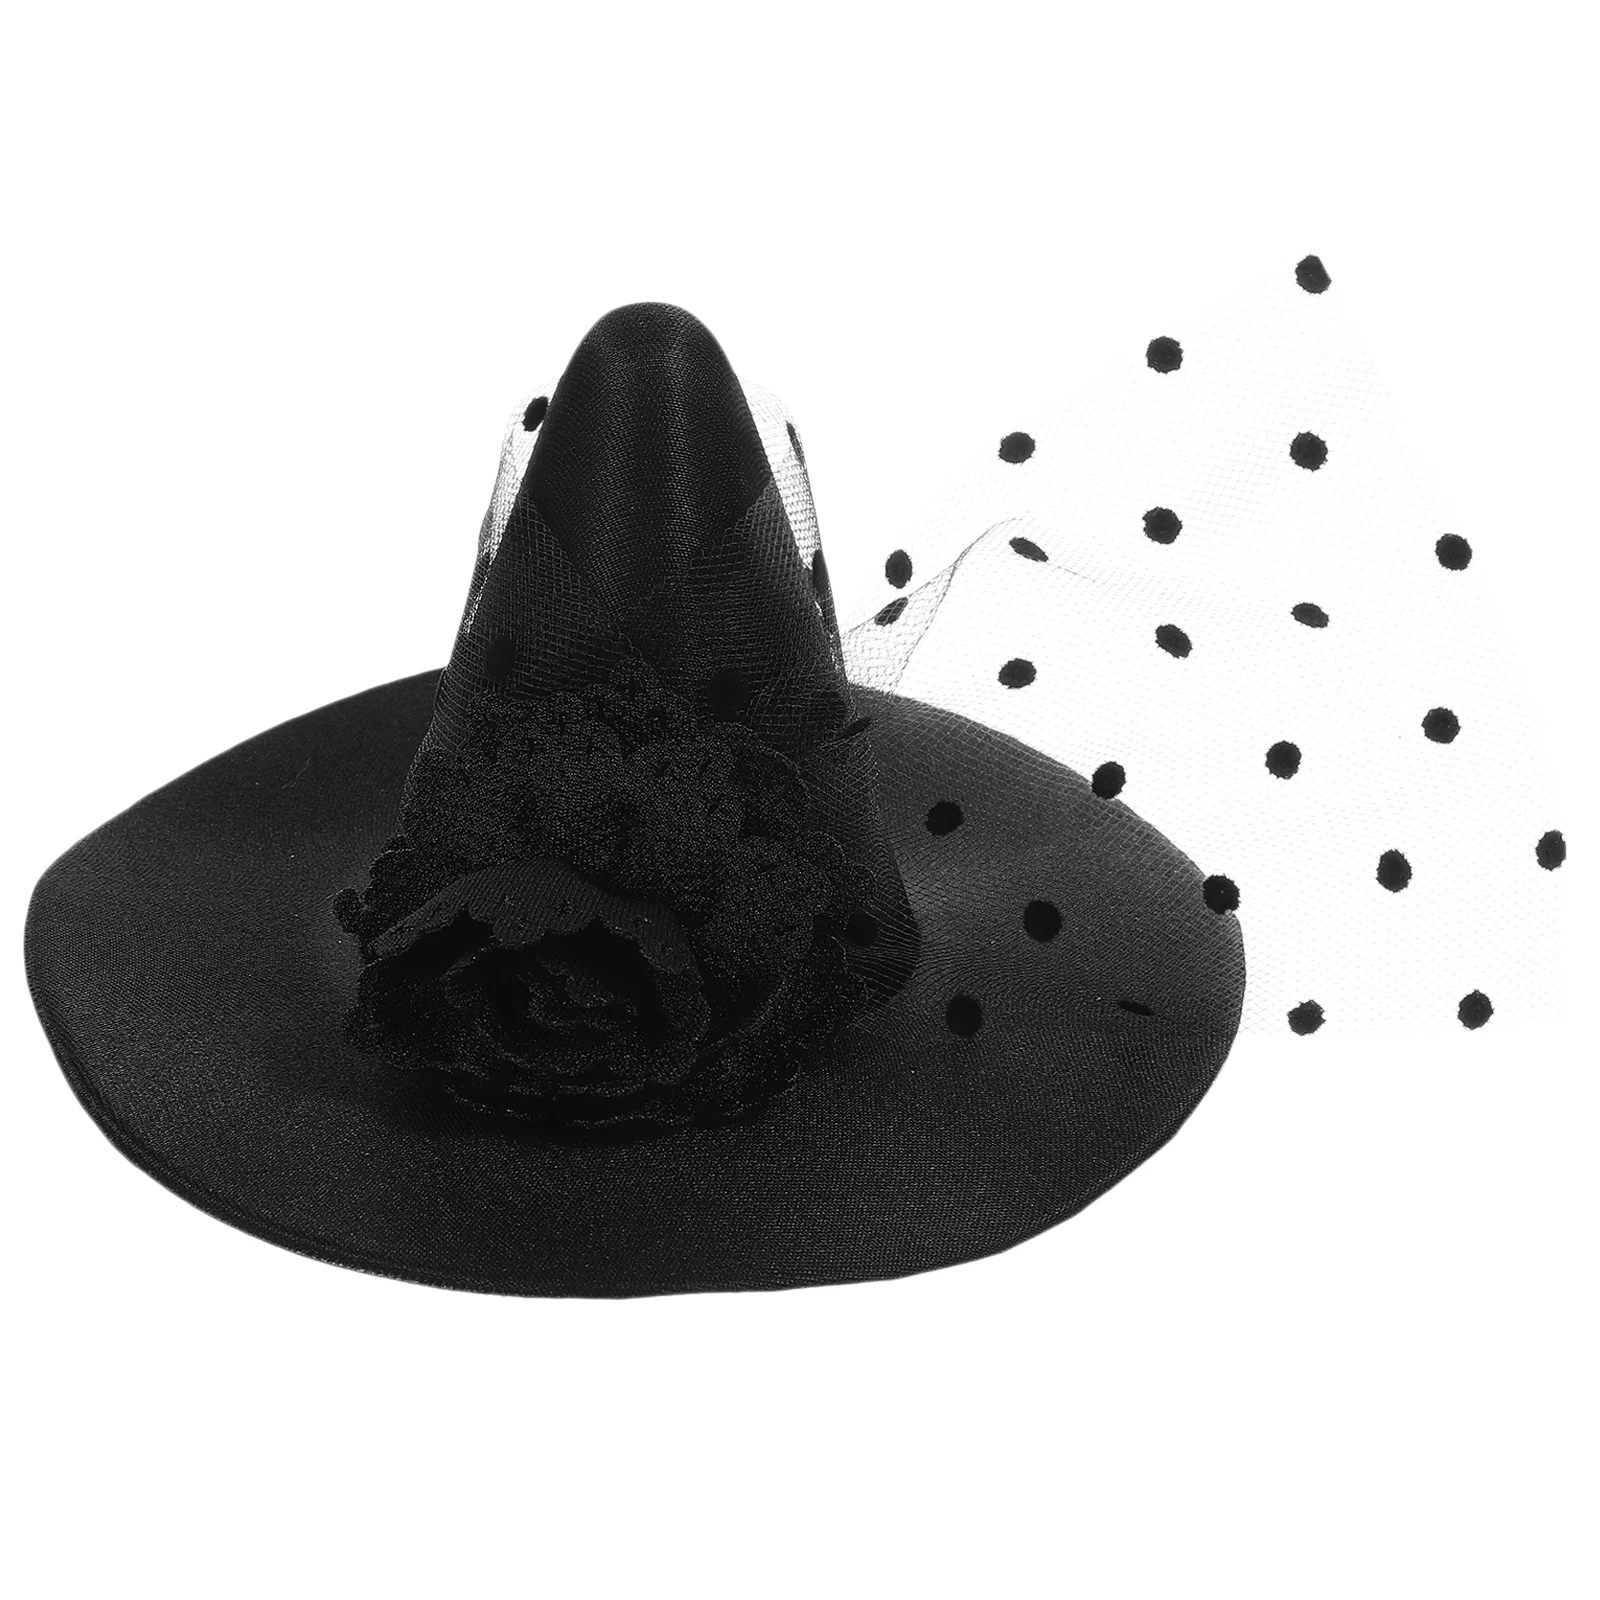 Сетчатая шляпа ведьмы на Хэллоуин, Черная Шляпа Ведьмы, повязка на голову с зажимом Сбоку, головной убор для костюма, Вечерние принадлежности, декор для танцевальной вечеринки, Реквизит